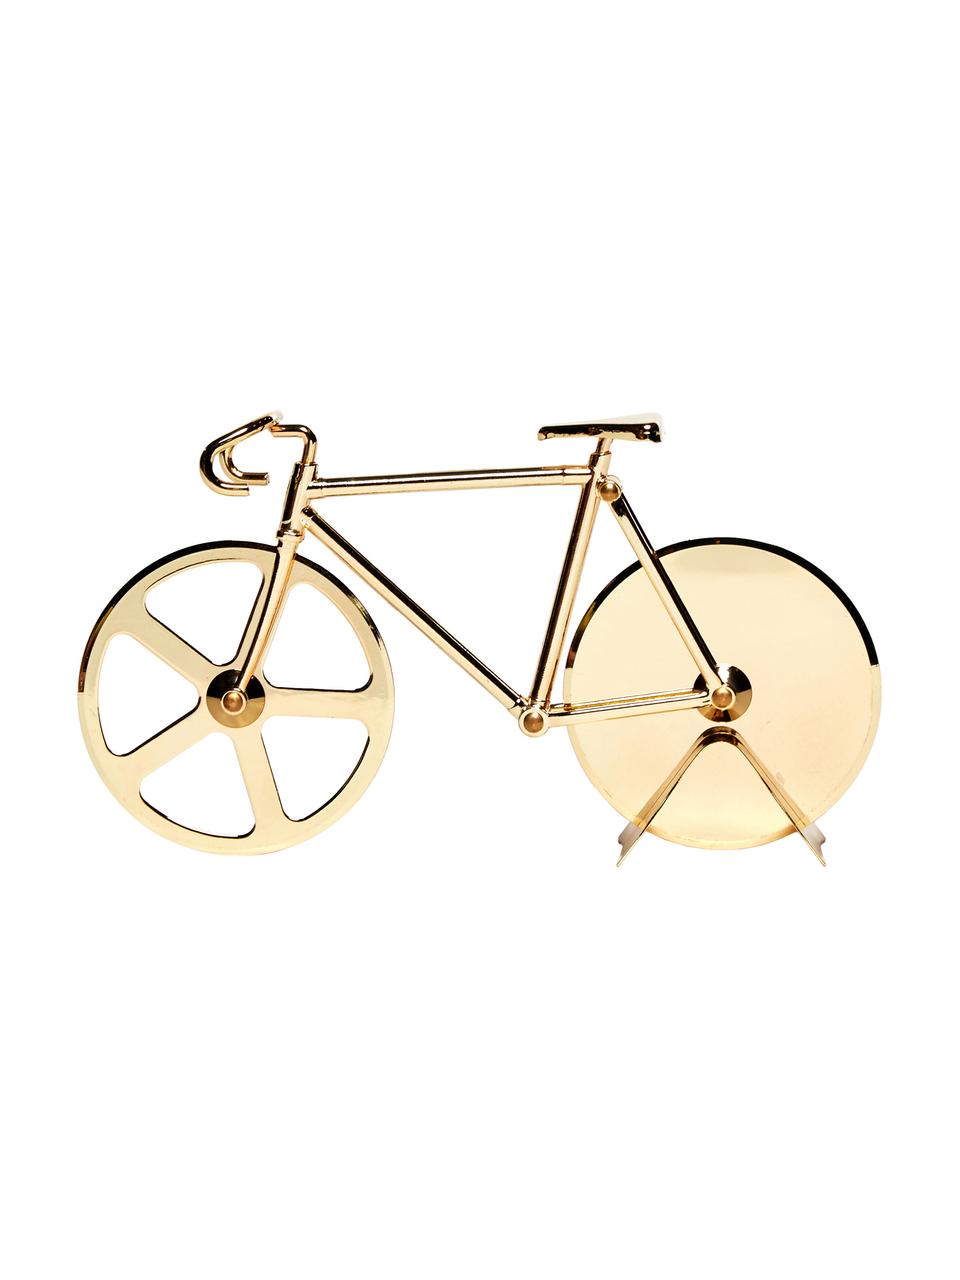 Goldfarbener Pizzaschneider Velo im Fahrraddesign aus Edelstahl, Edelstahl, beschichtet, Goldfarben, 23 x 13 cm